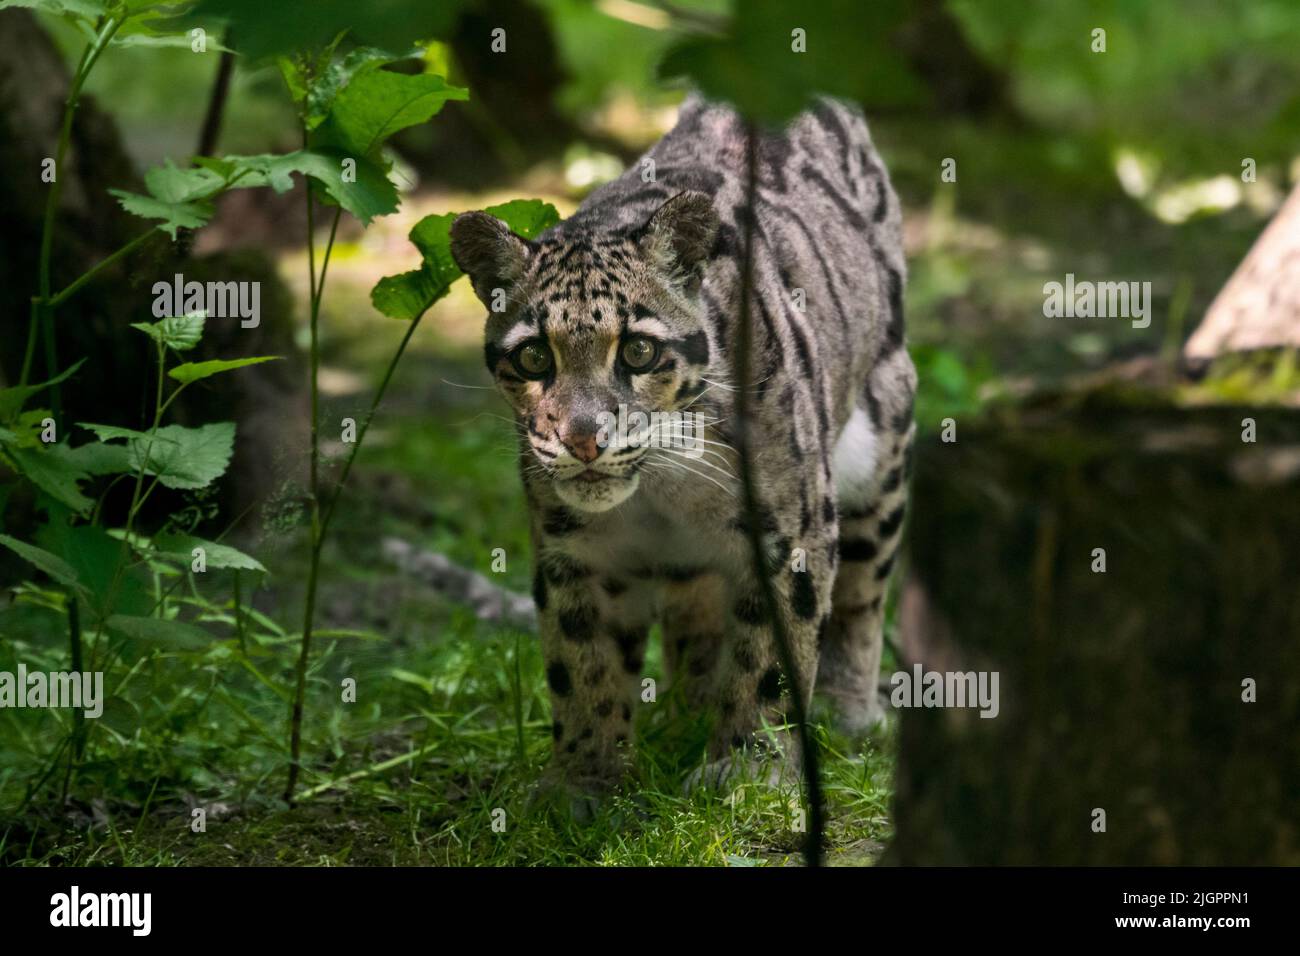 Le léopard (Neofelis nebulbosa) est un chat arboricole, solitaire et nocturne originaire de l'Himalaya vers l'Asie du Sud-est en Chine du Sud Banque D'Images